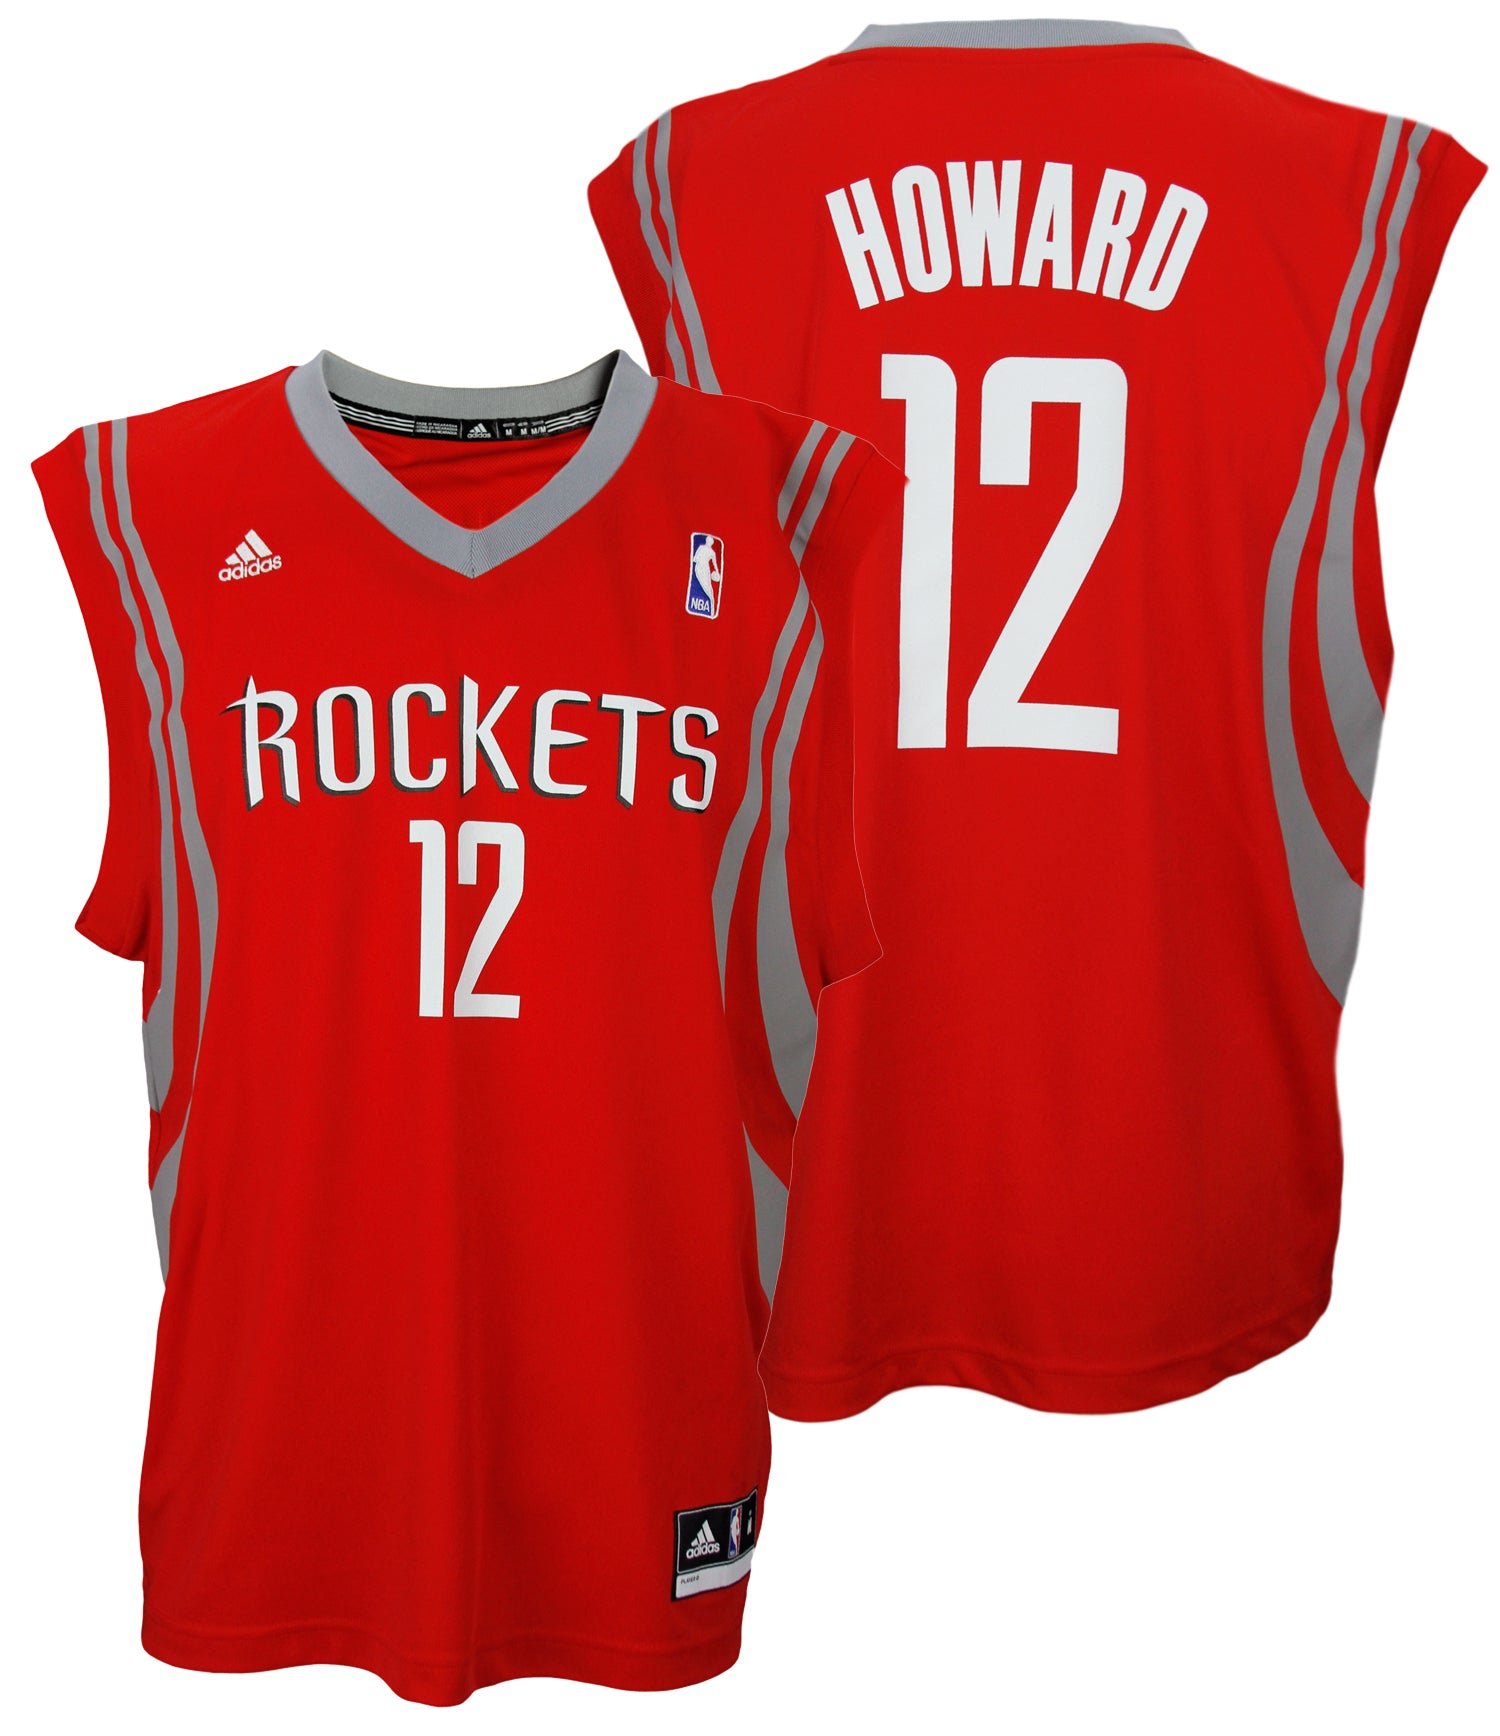 dwight howard rockets jersey